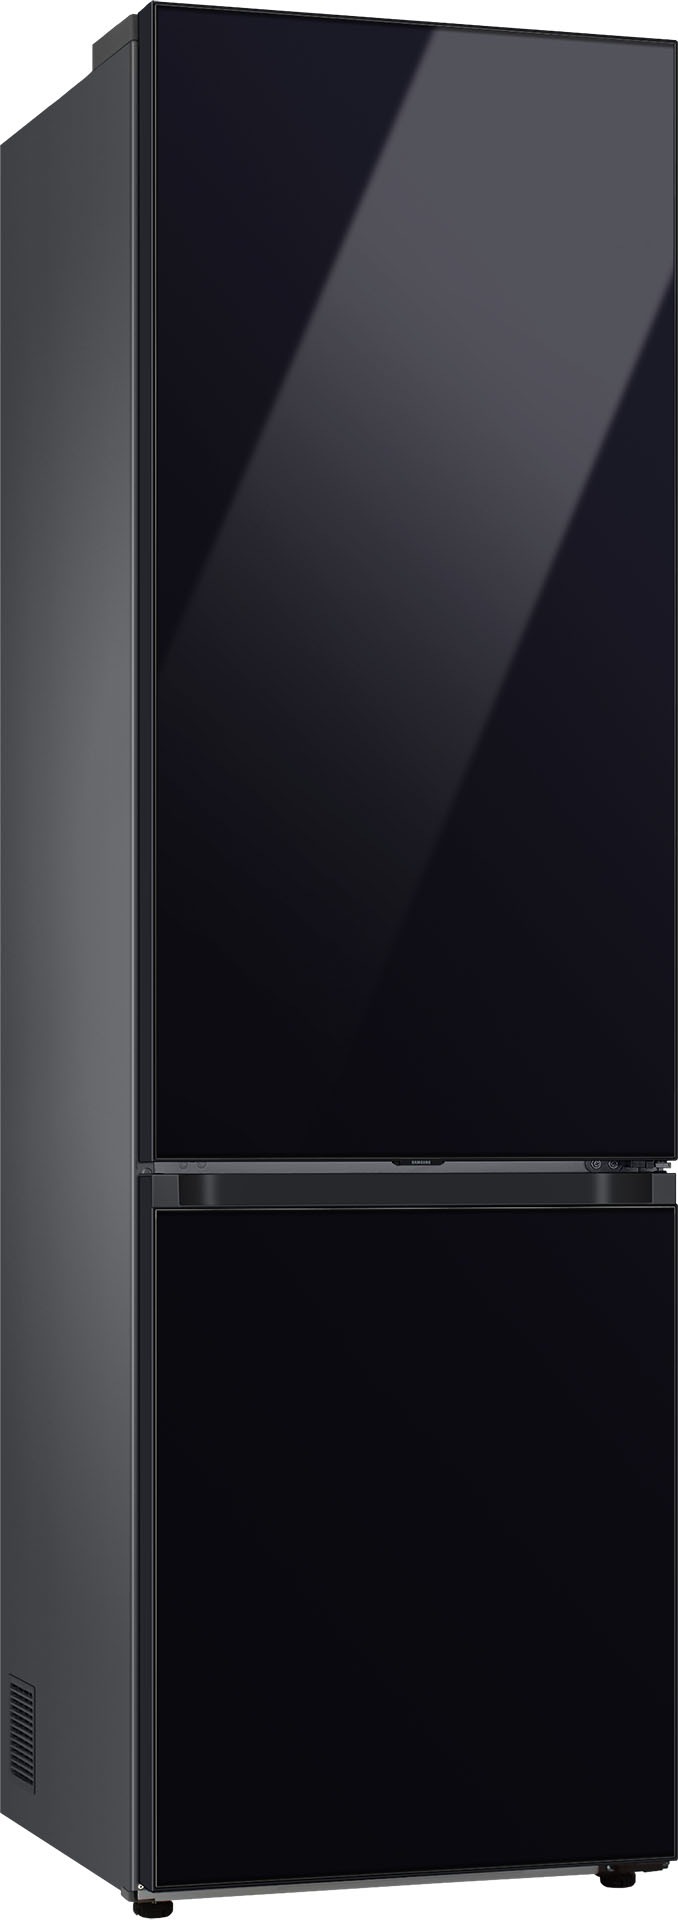 Samsung Kühl-/Gefrierkombination »RL38A6B6C22«, RL38A6B6C22, 203 cm hoch, 59 ,5 cm breit mit 3 Jahren XXL Garantie